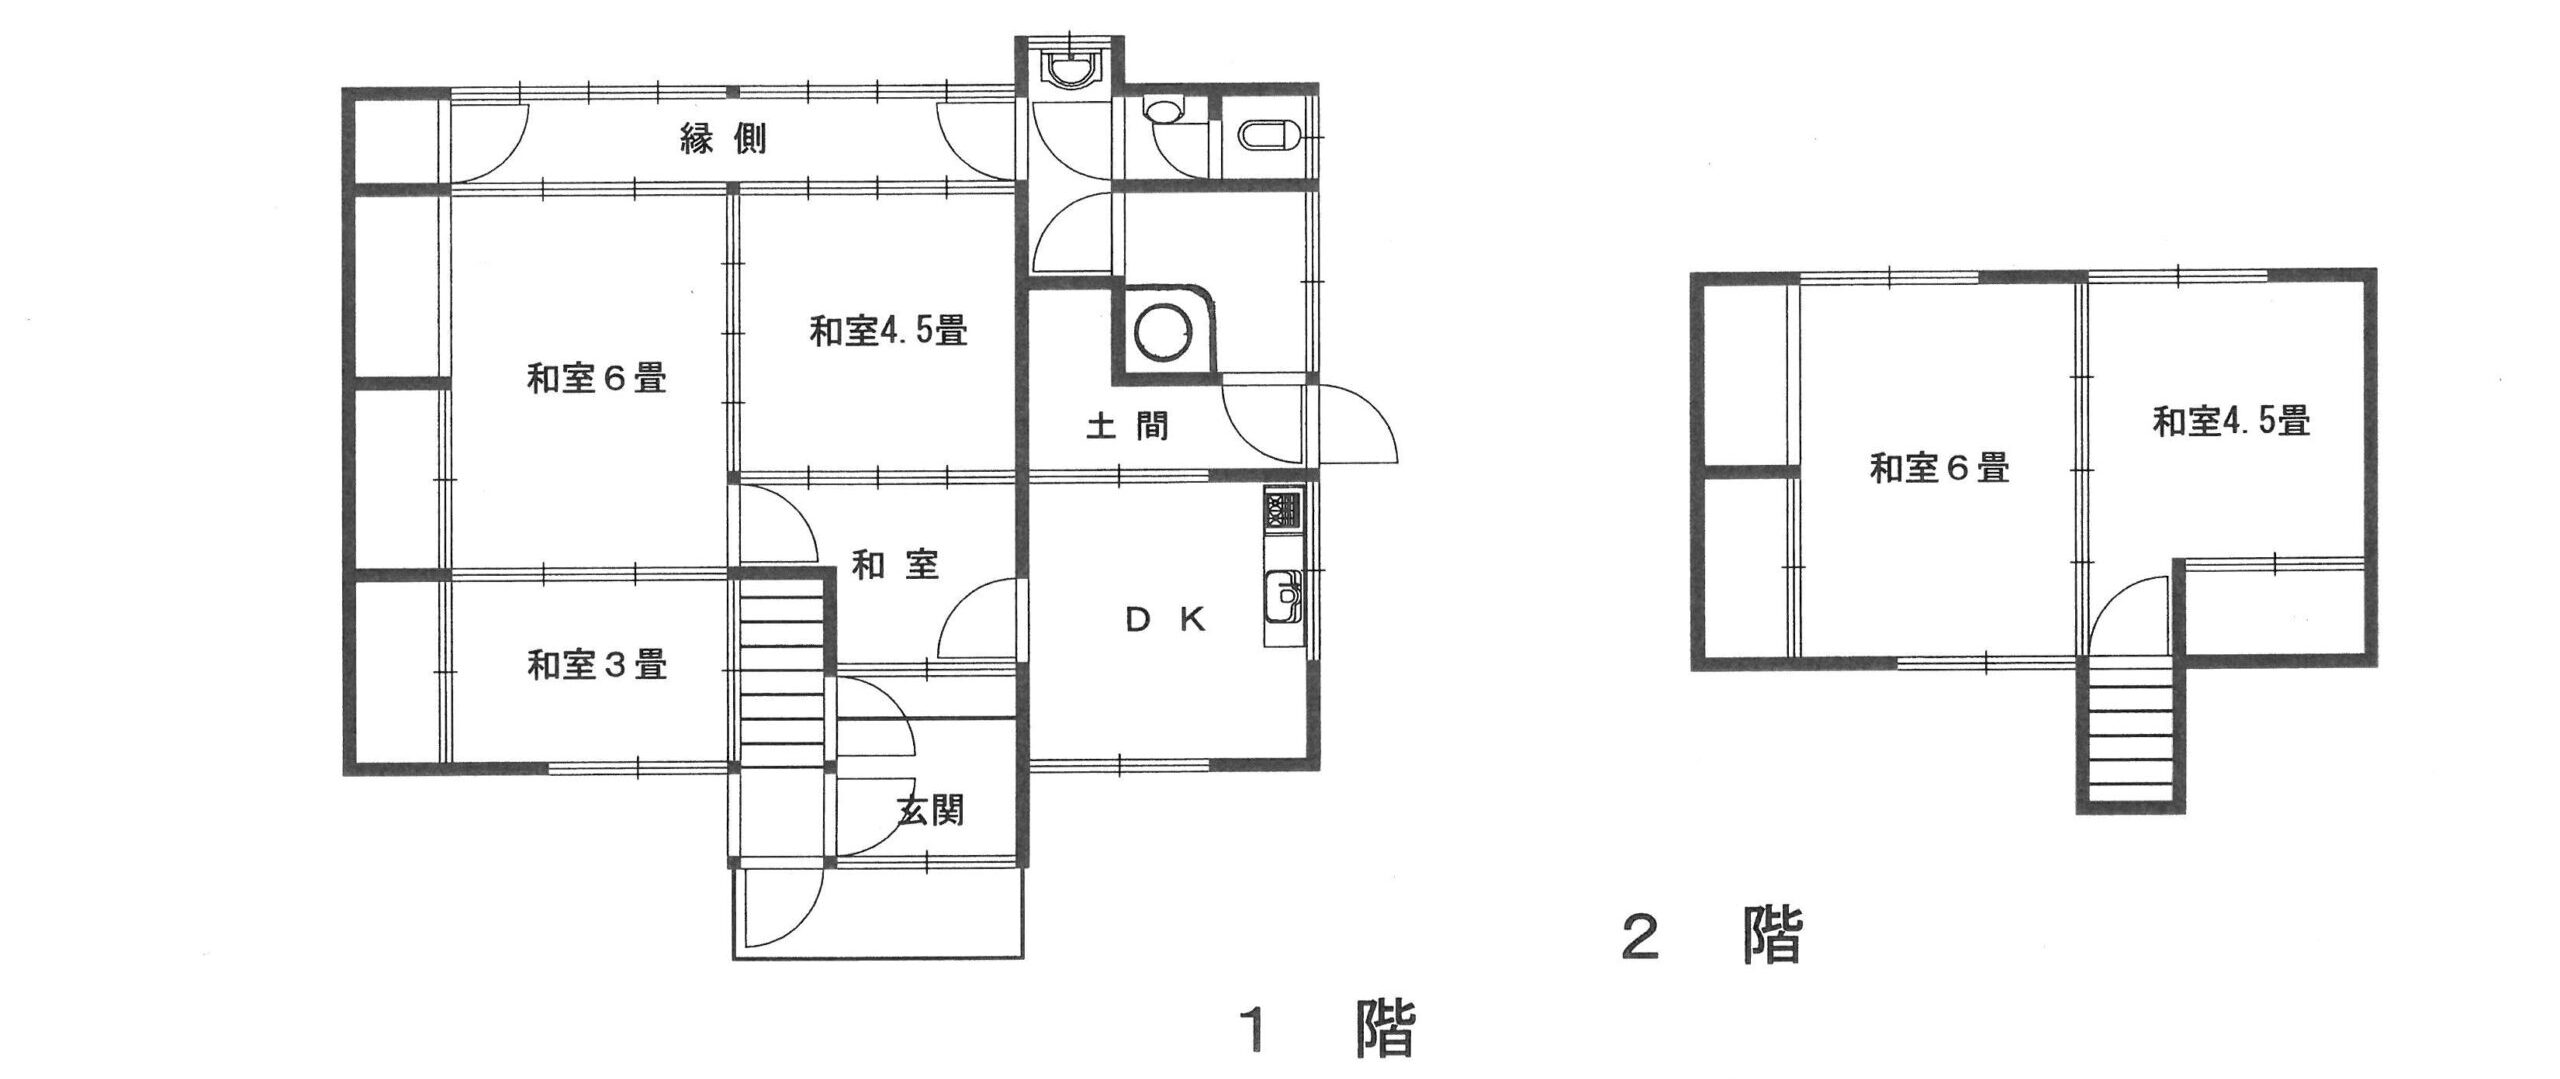 岡山県備前市の物件の間取り図です。木造2階建ての４SDKです。